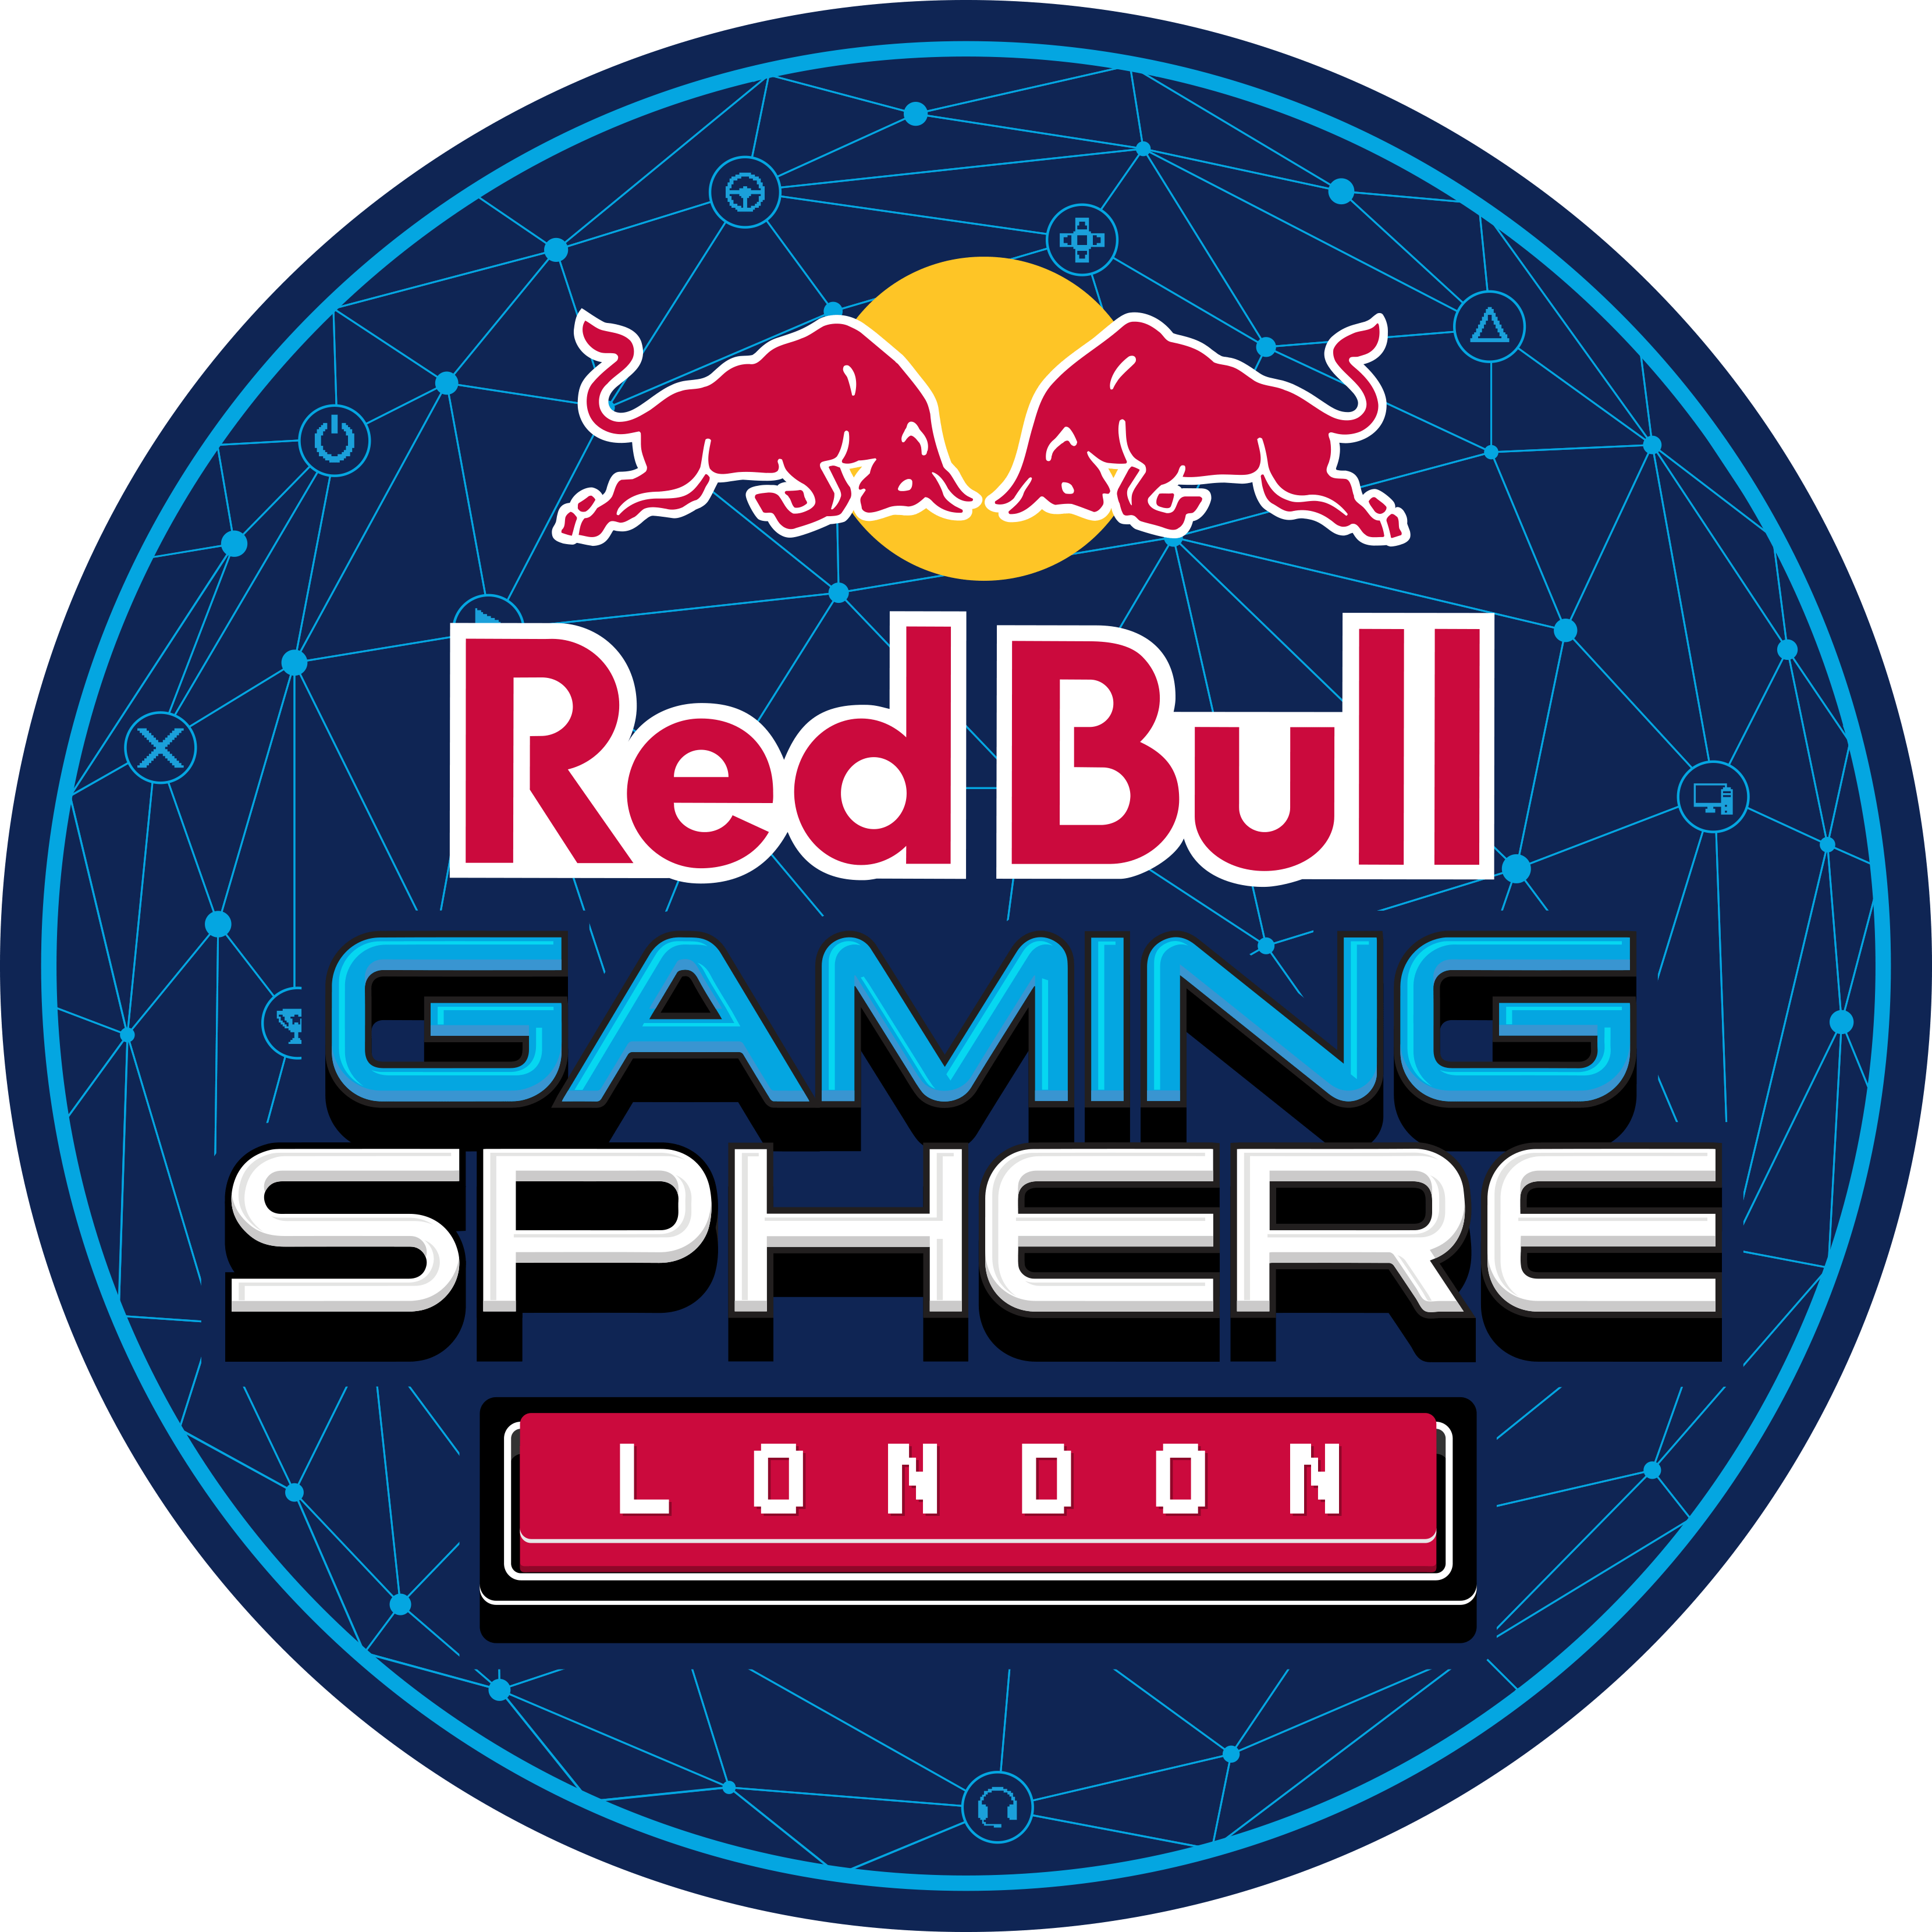 Red bull Gaming. Red bull Gaming Sphere London. Bull games логотип. Red bull Gaming logo.